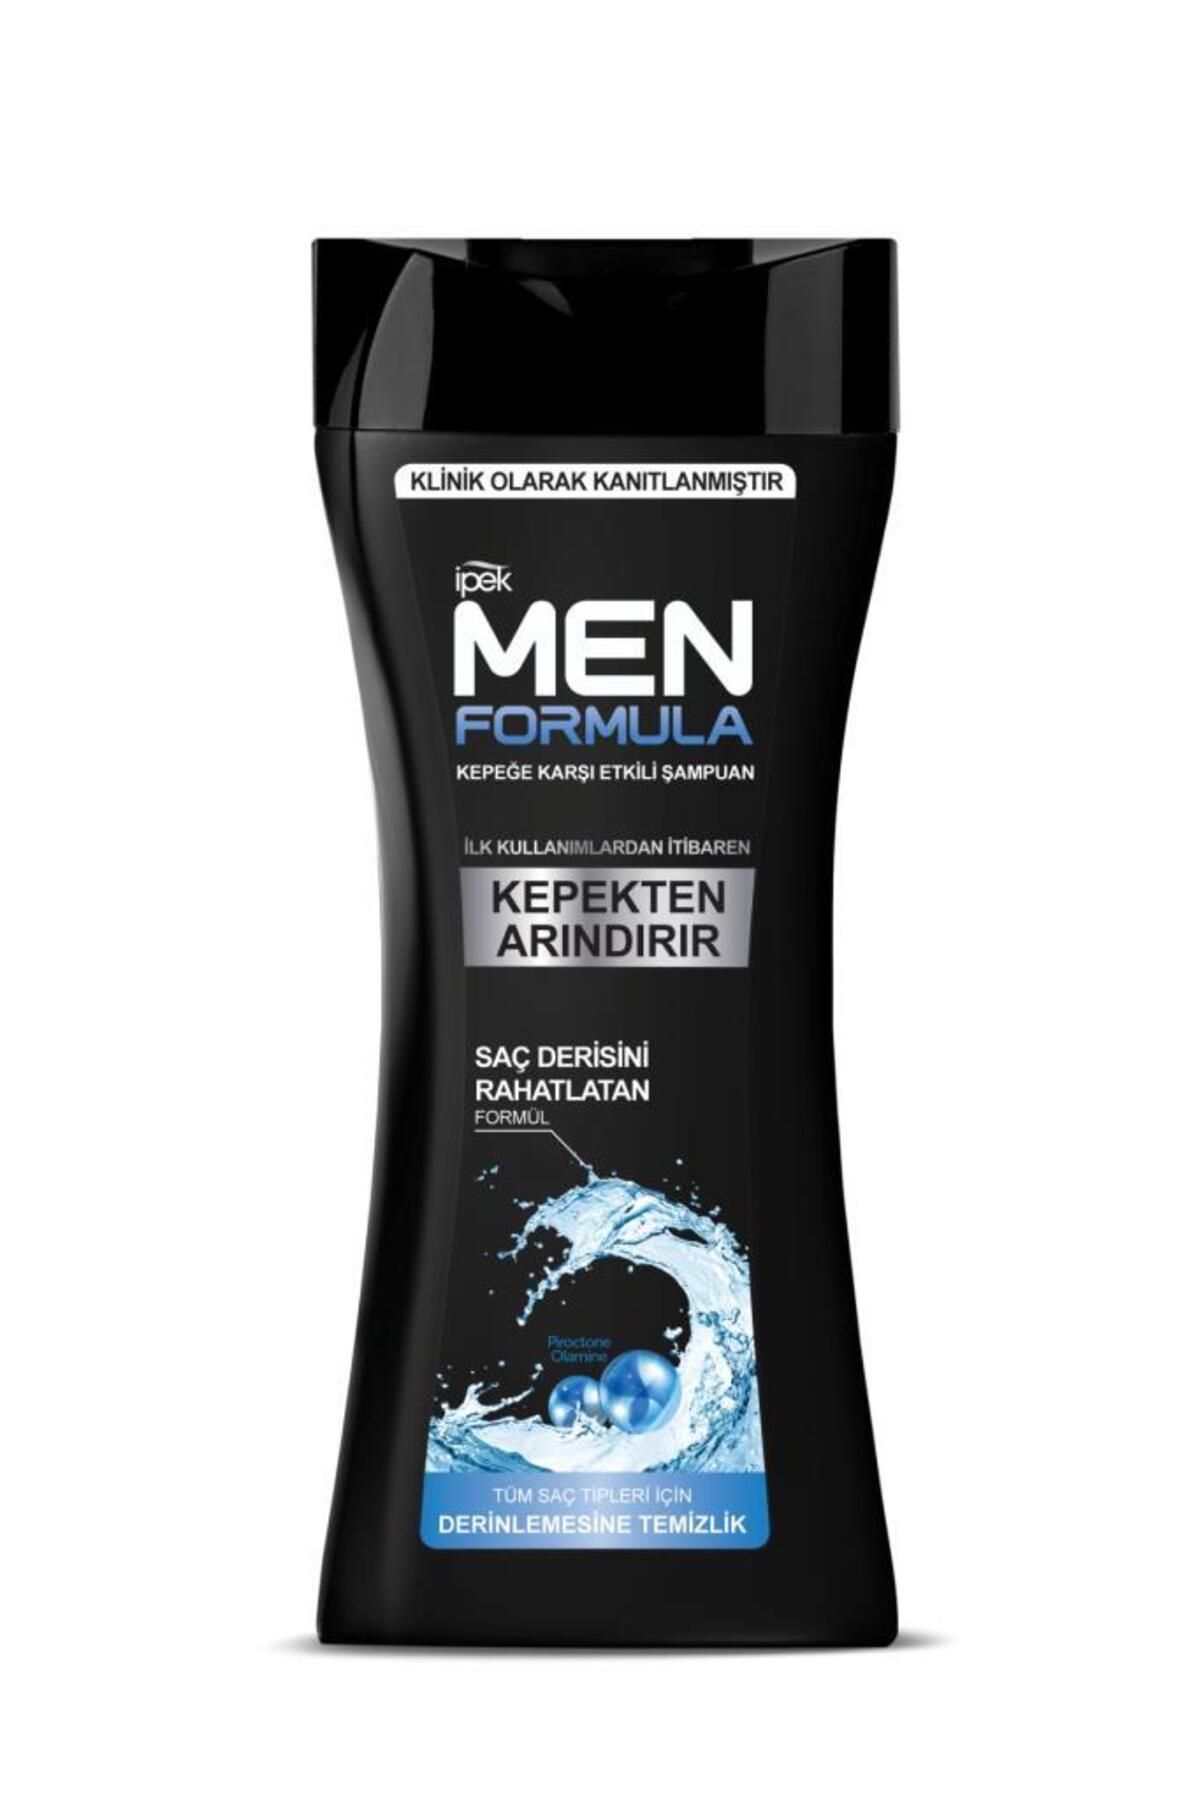 İpek Men Formula Kepeğe Karşı Etkili Şampuan - Normal Saçlar